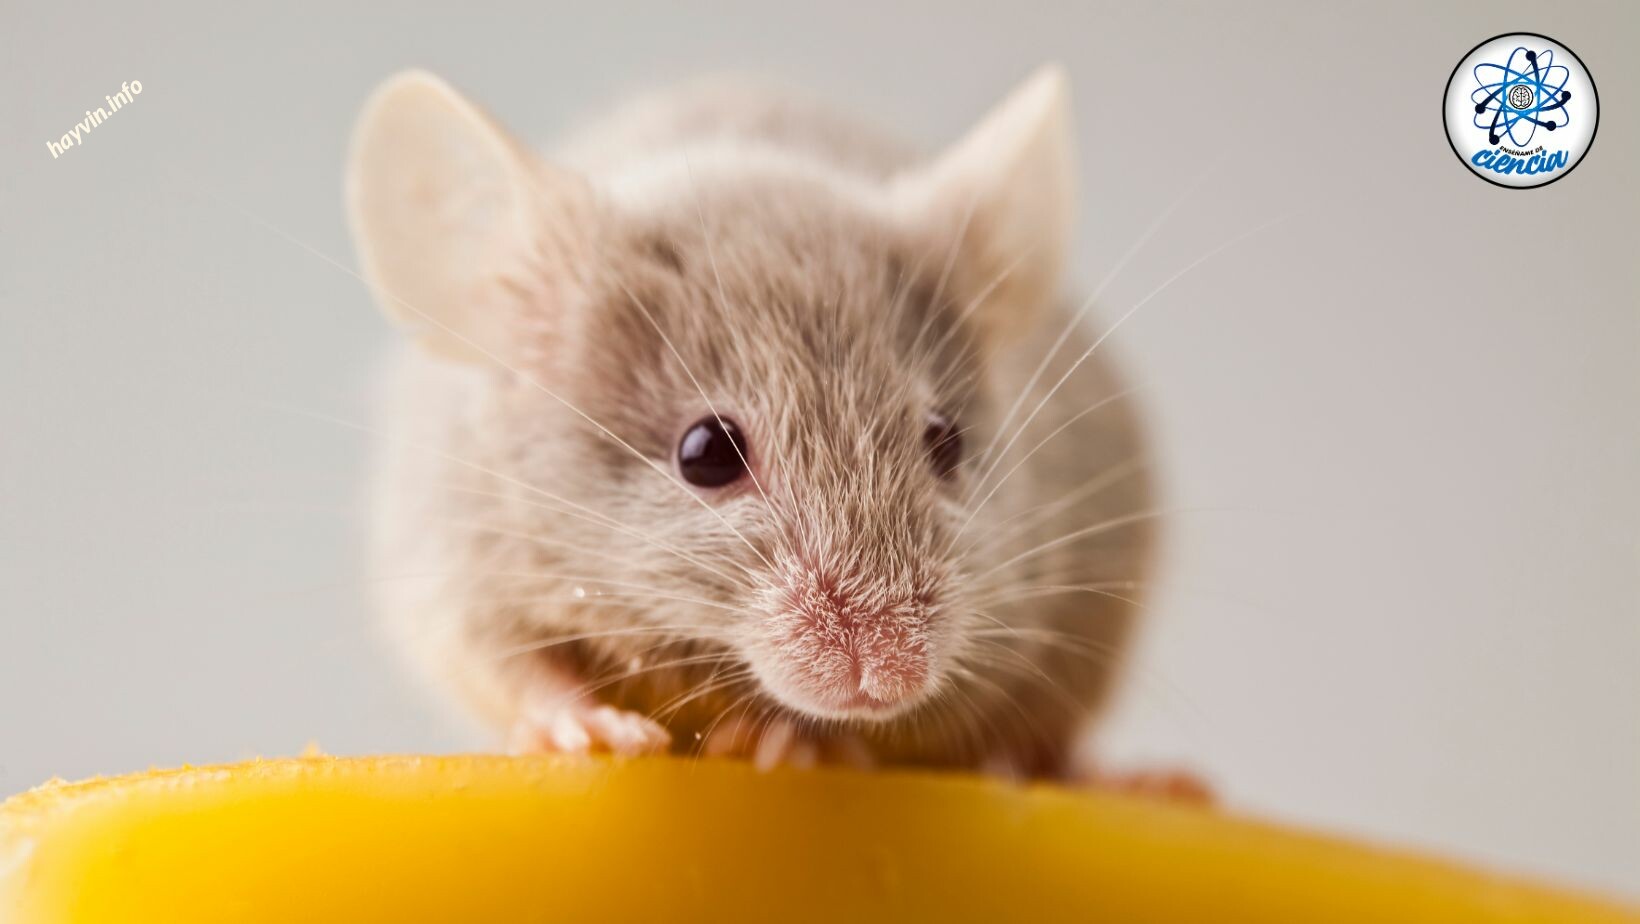 Így tudod gyorsan elriasztani az egereket a házadtól méreg vagy csapdák használata nélkül